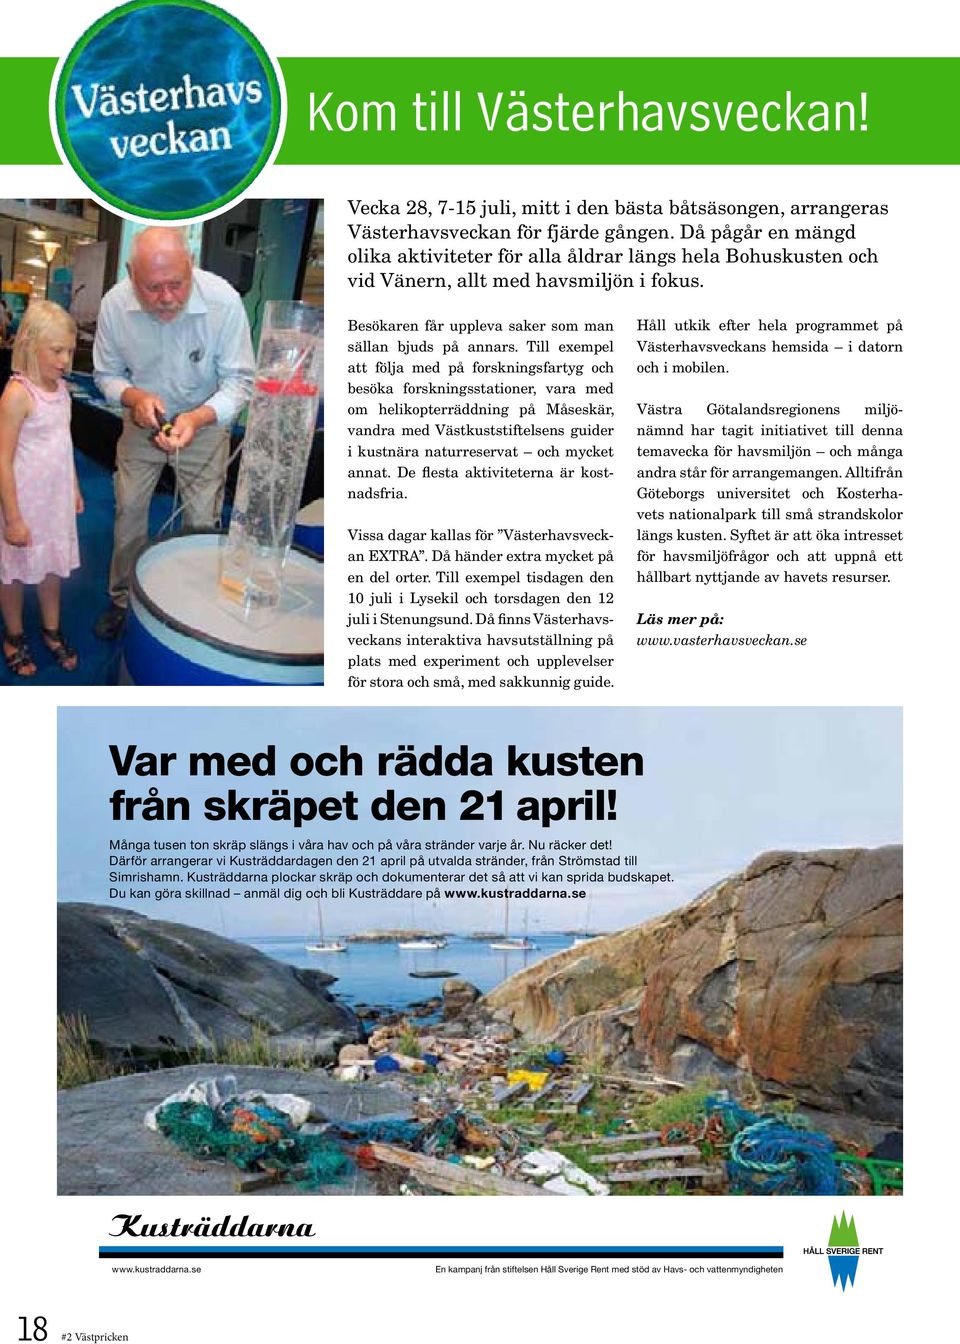 Till exempel att följa med på forskningsfartyg och besöka forskningsstationer, vara med om helikopterräddning på Måseskär, vandra med Västkuststiftelsens guider i kustnära naturreservat och mycket